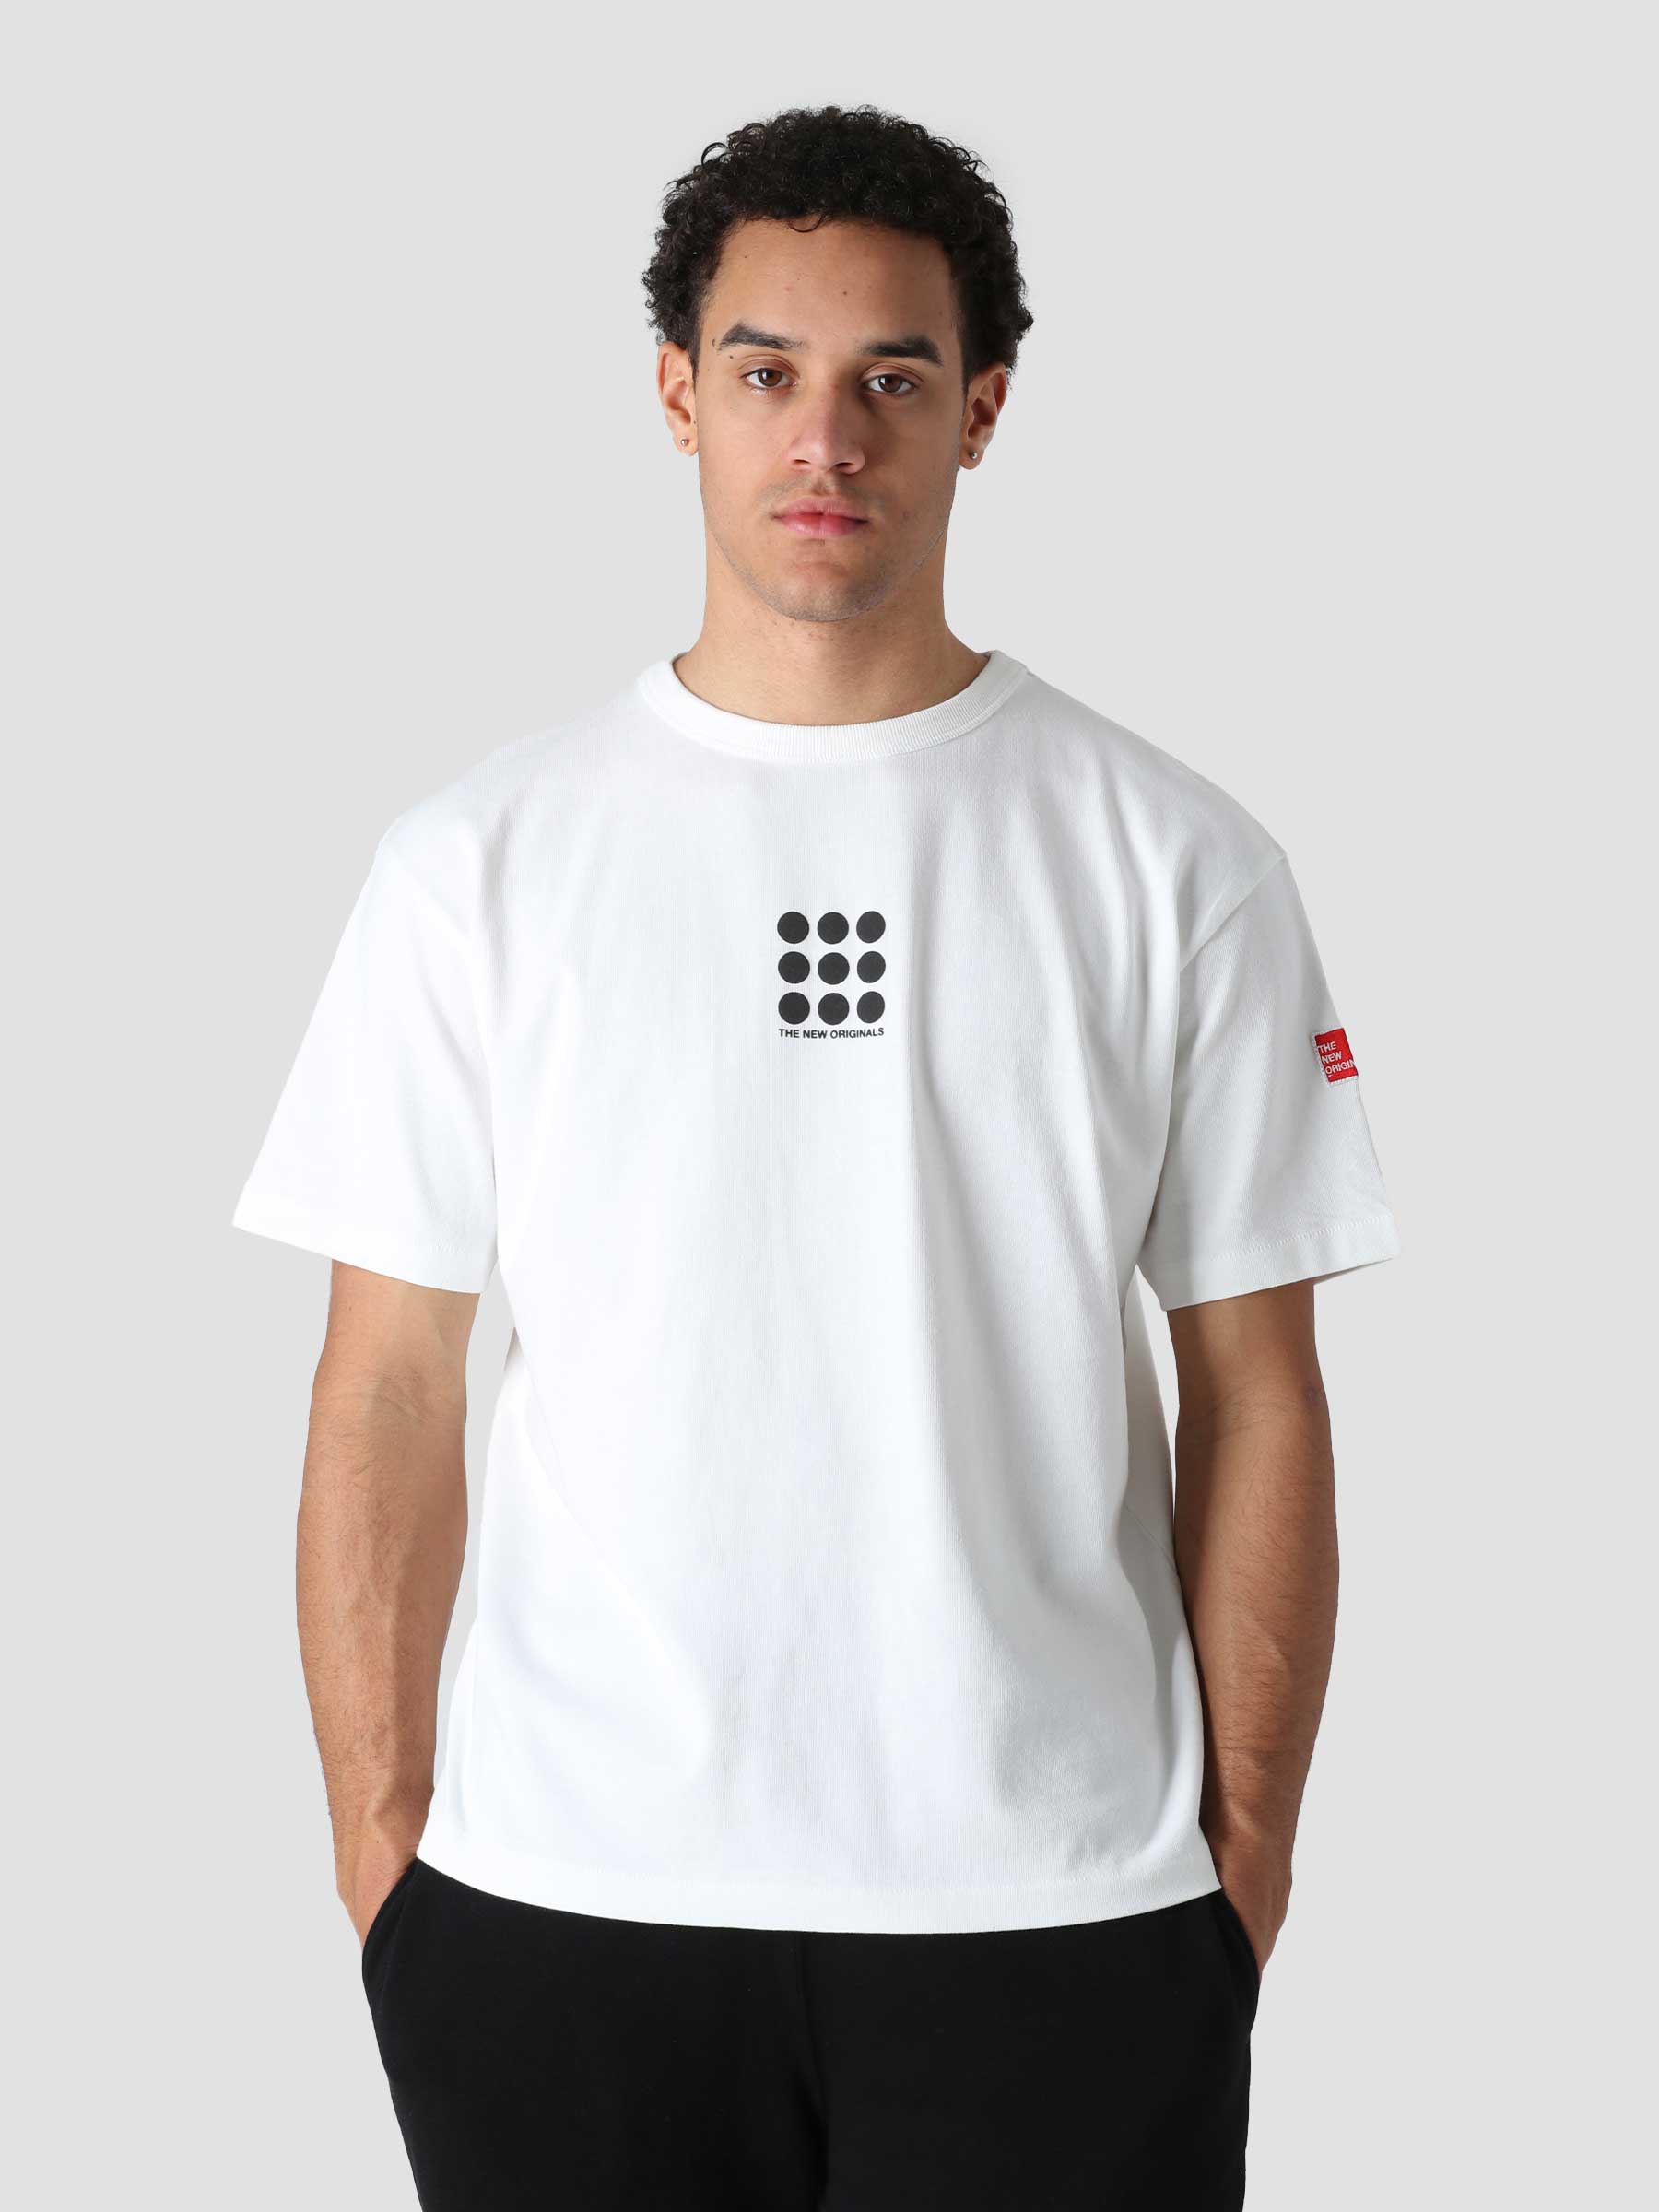 The New Originals 9-Dots T-Shirt